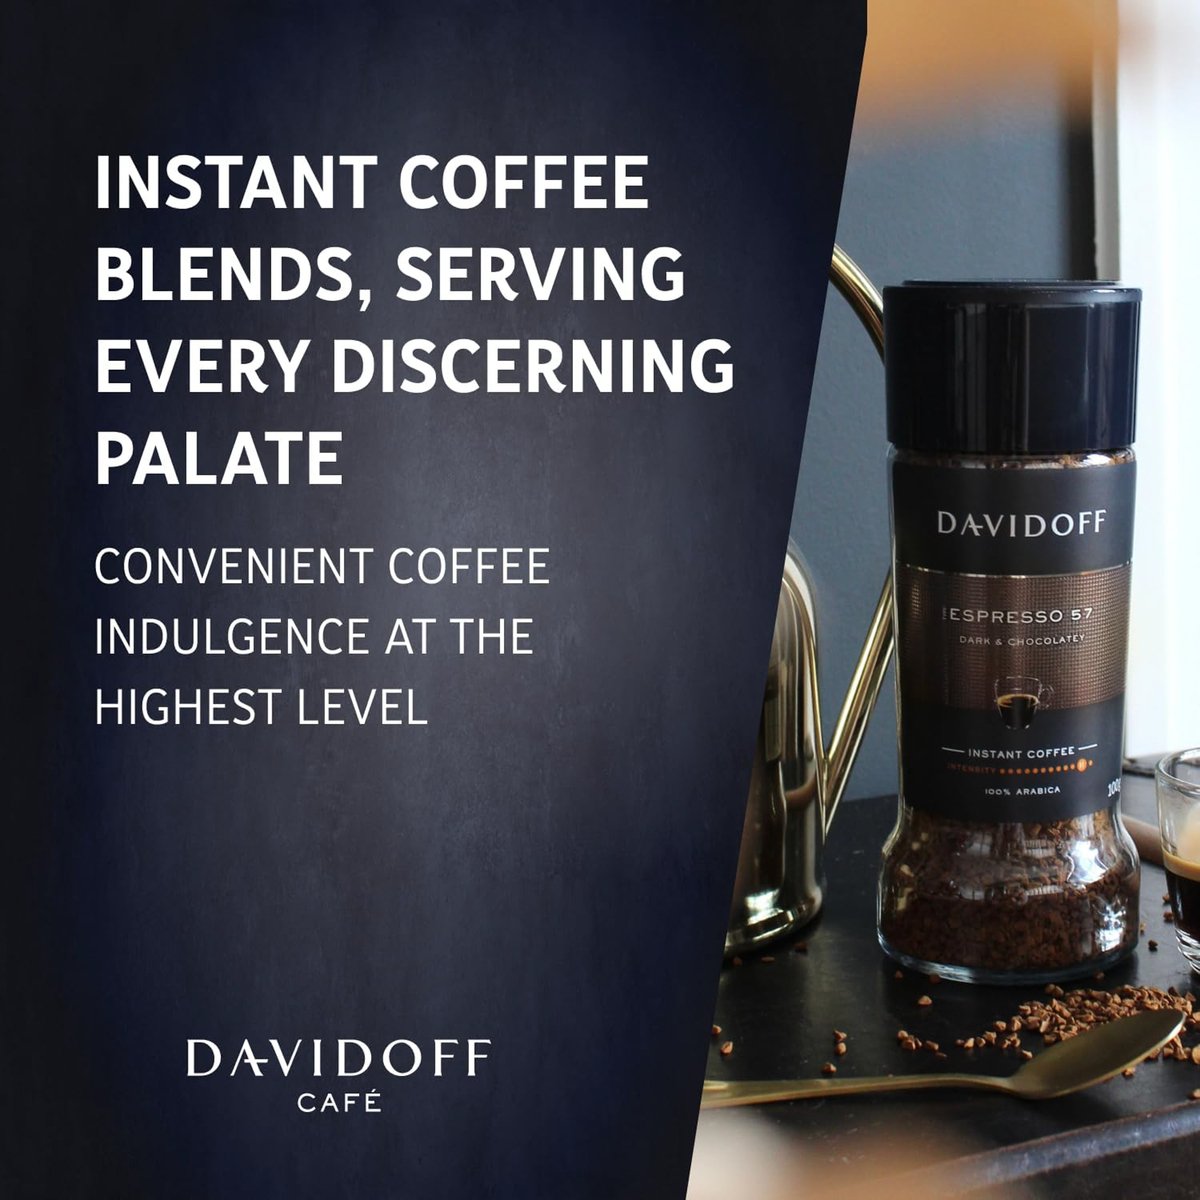 Davidoff Espresso Dark & Chocolatey Value Pack 100 g